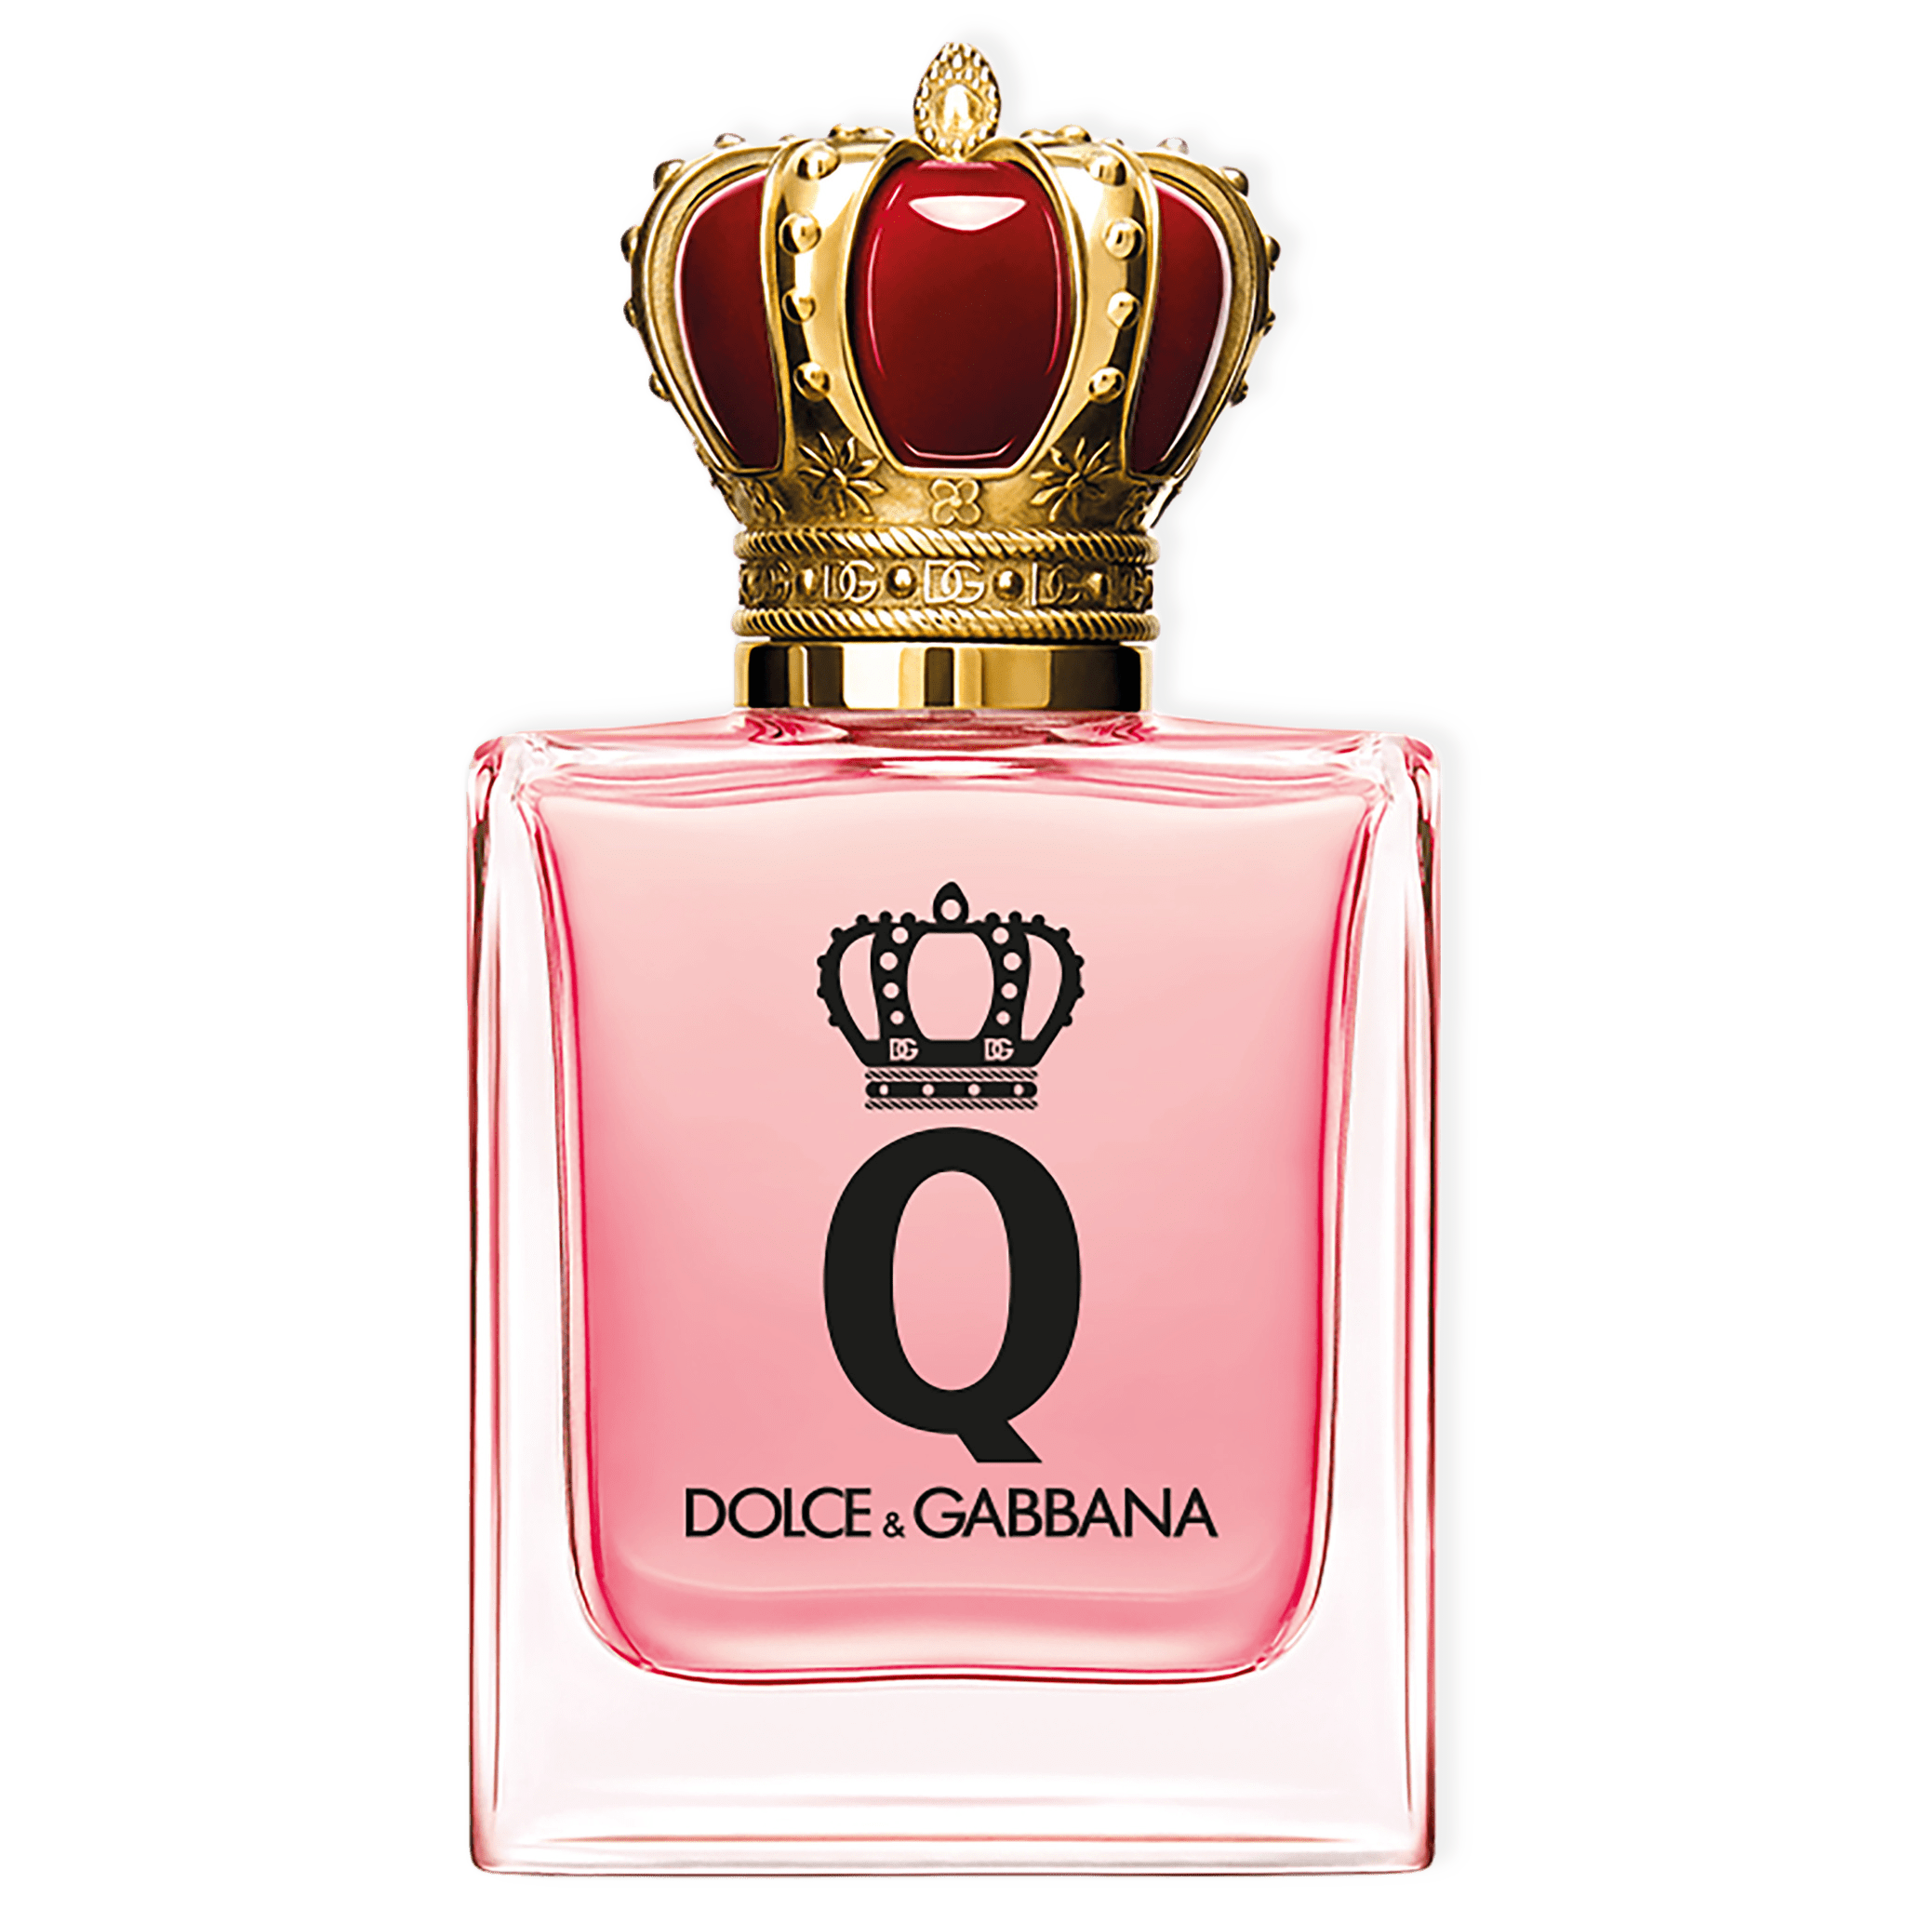 Q Eau de Parfum från Dolce & Gabbana